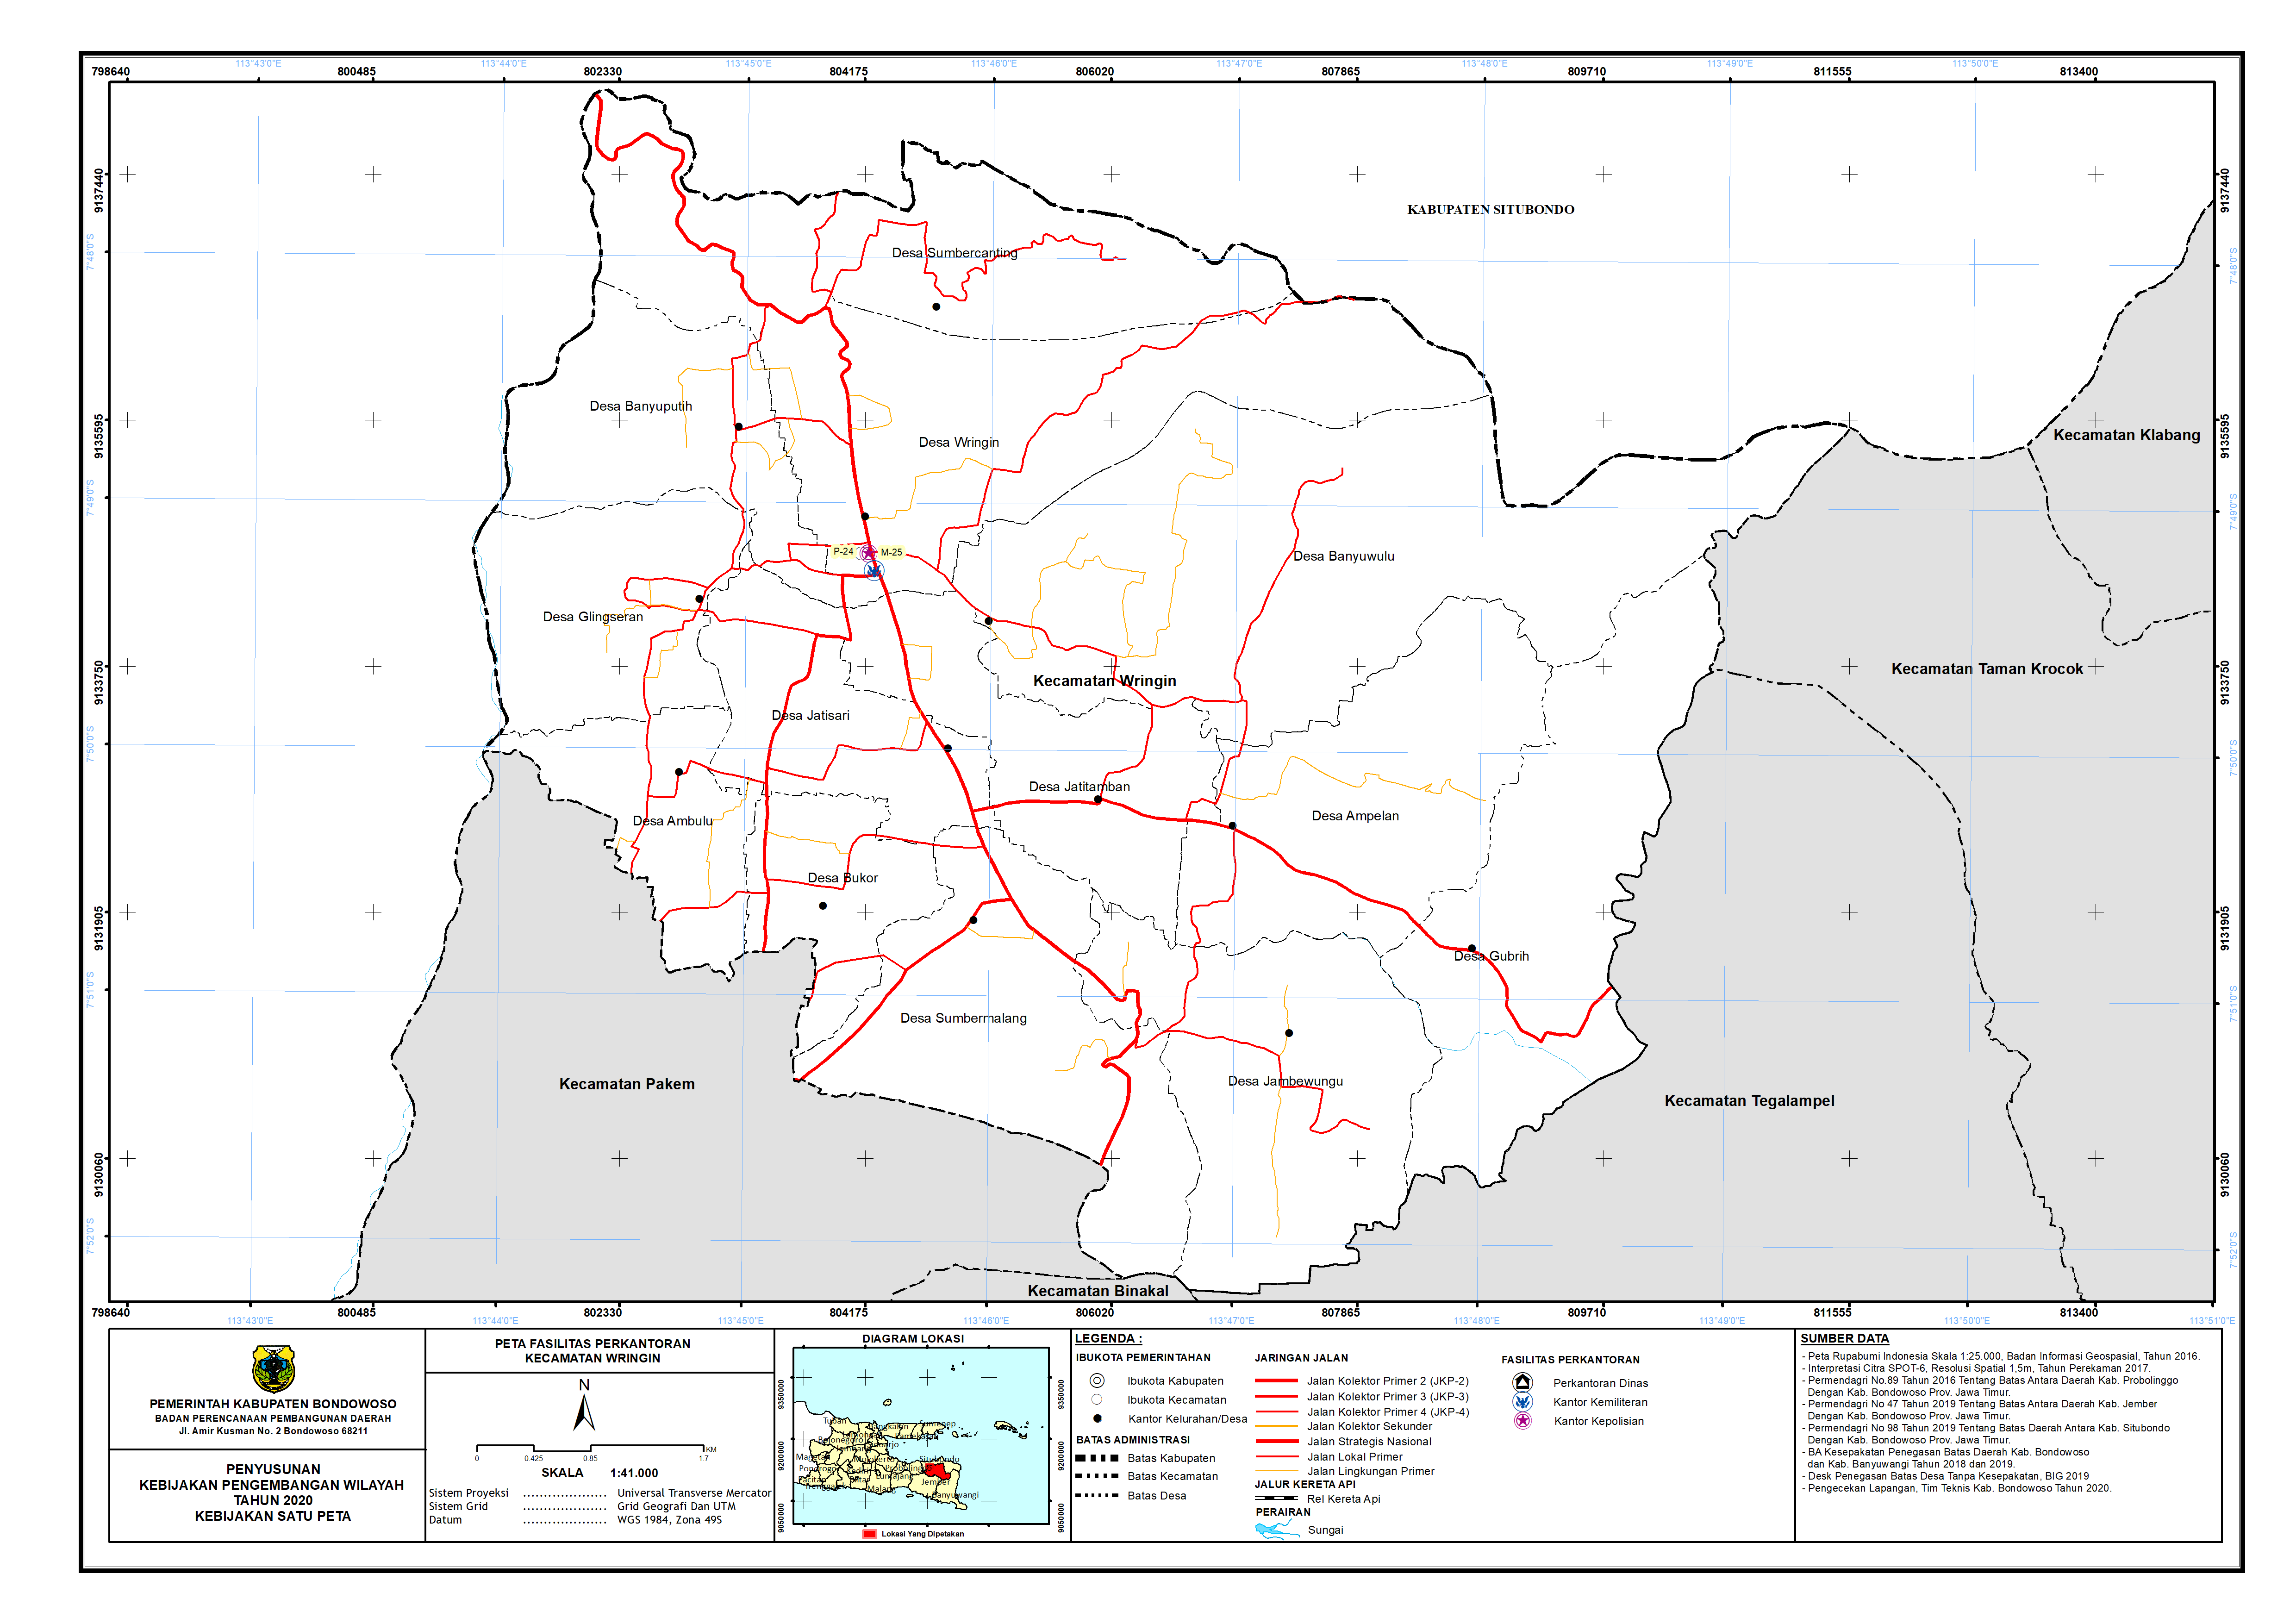 Peta Persebaran Perkantoran Kecamatan Wringin.png